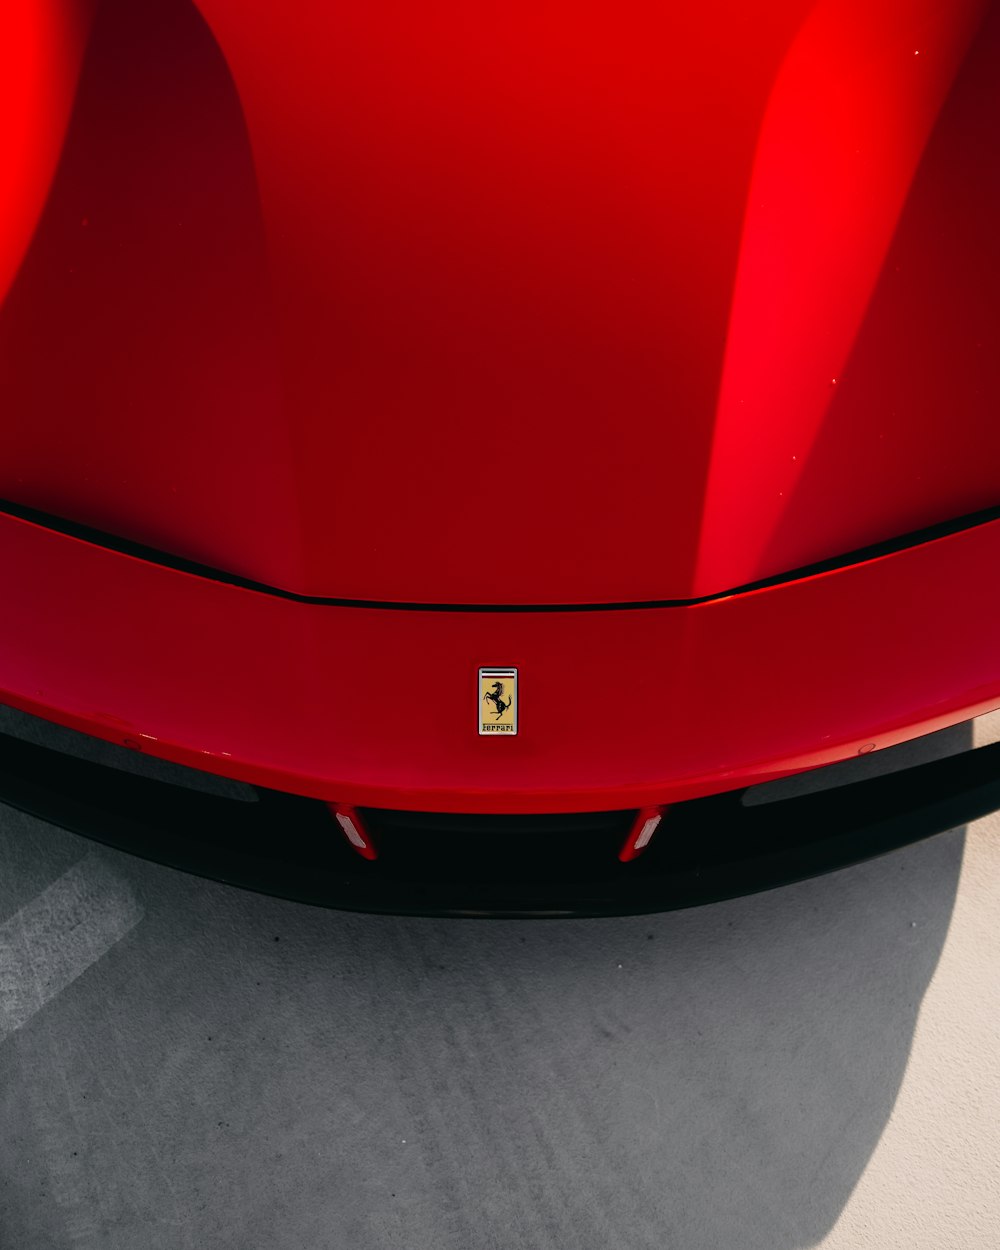 회색 콘크리트 바닥에 빨간 페라리 자동차